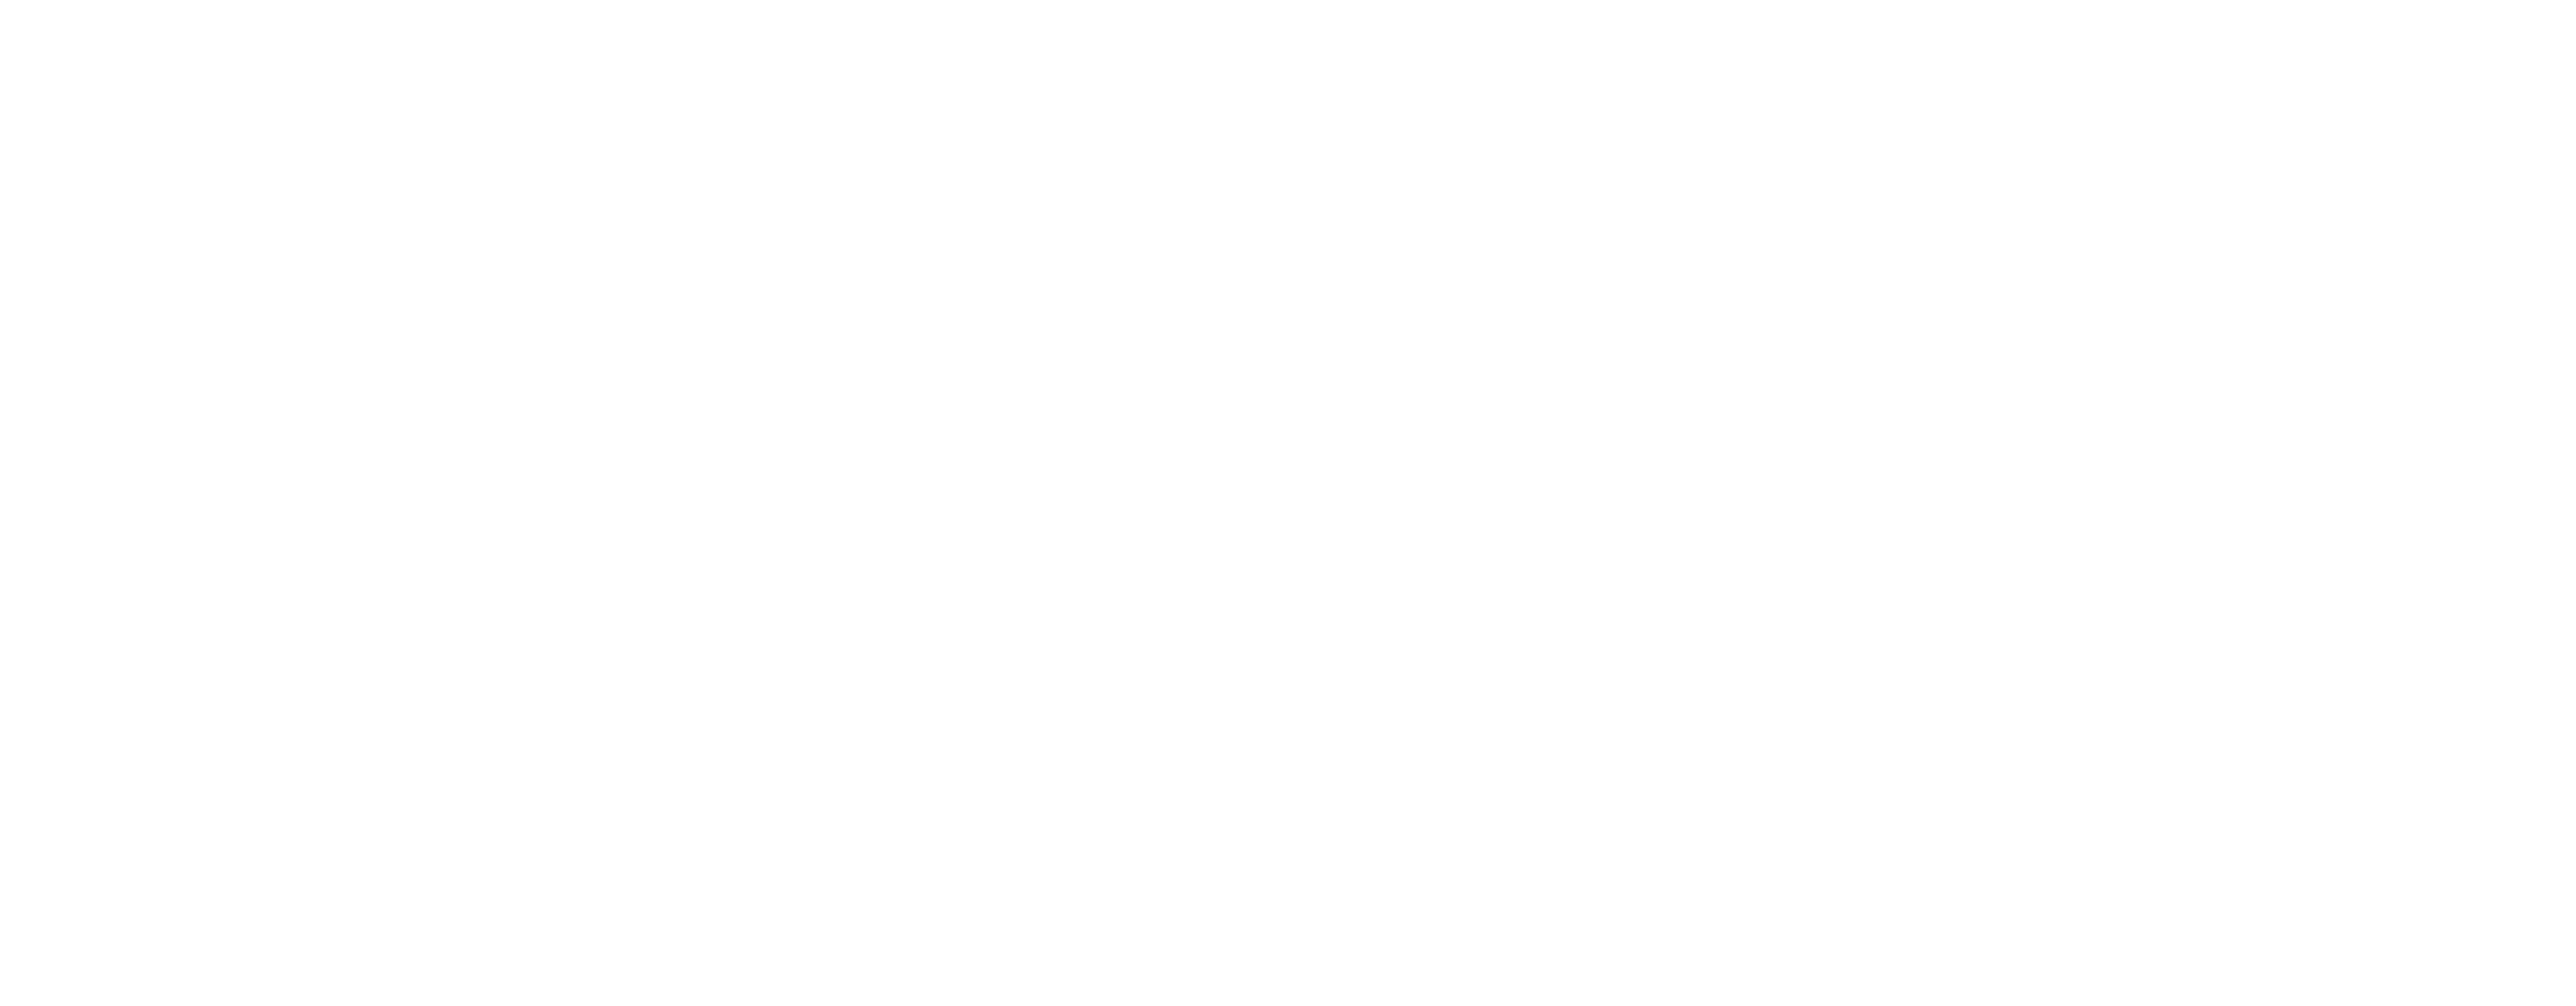 PANDAI CAPITAL